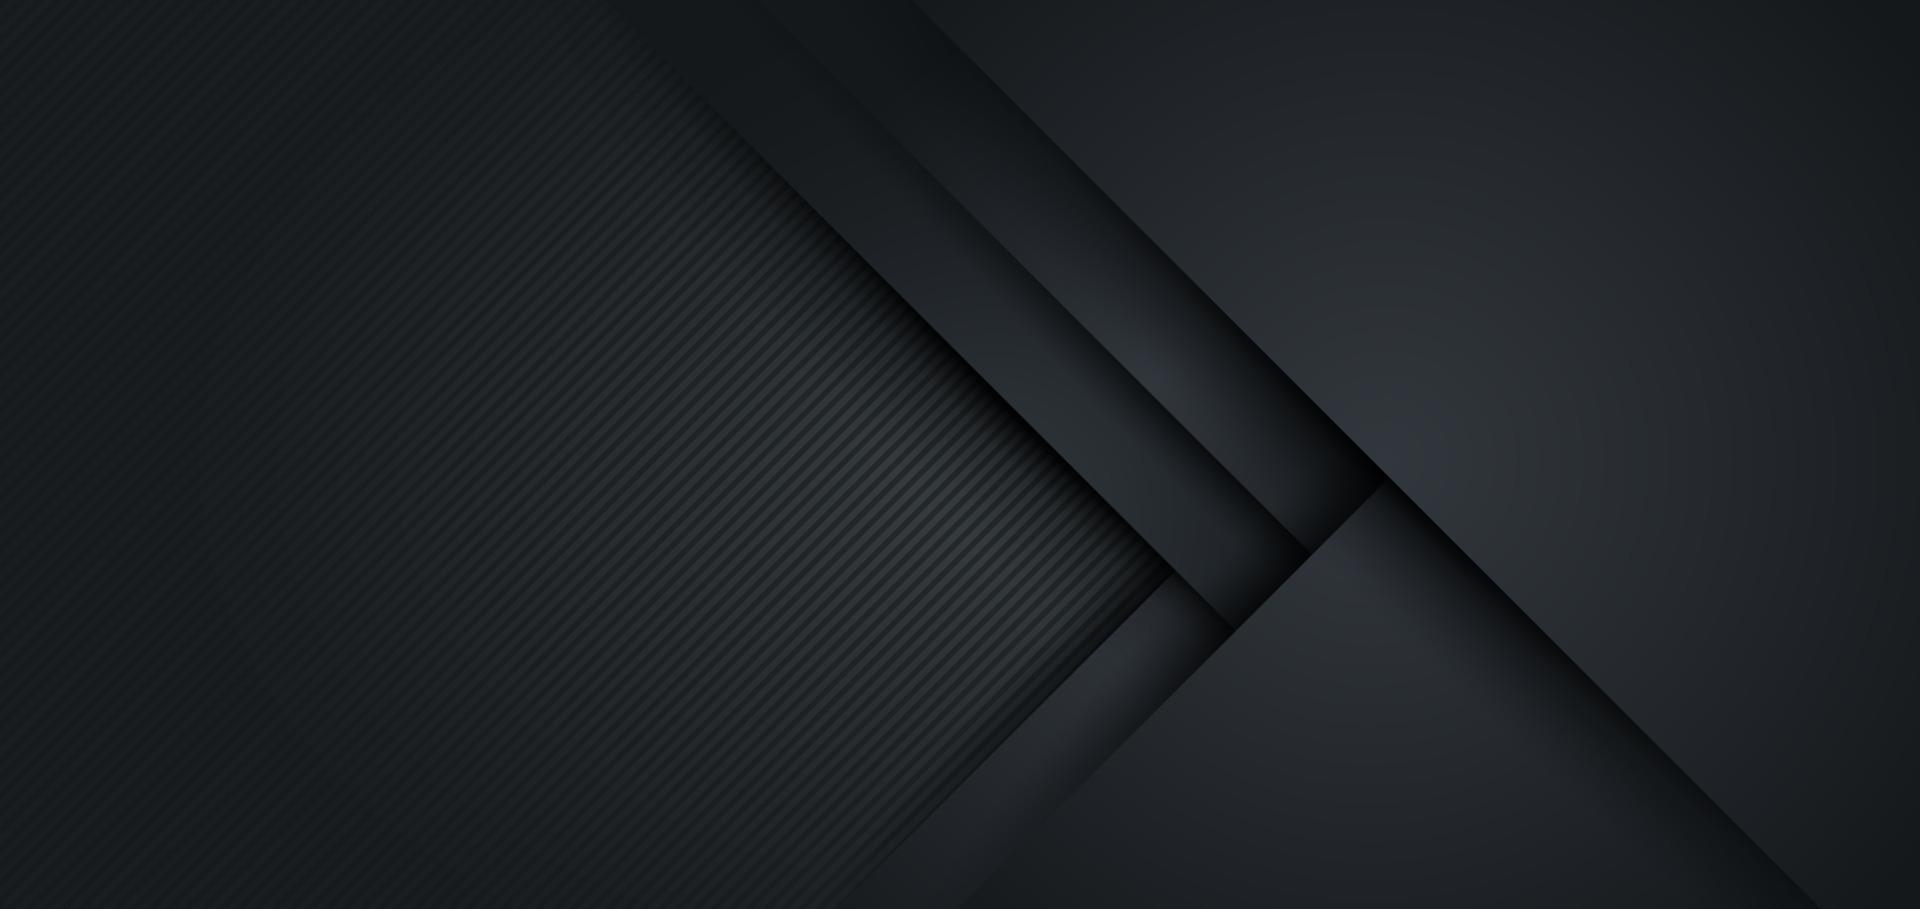 Fondo de forma geométrica negra abstracta con textura de línea diagonal. diseño para presentación, banner, portada, web, flyer, tarjeta, cartel, juego, textura, diapositiva y powerpoint. ilustración vectorial vector